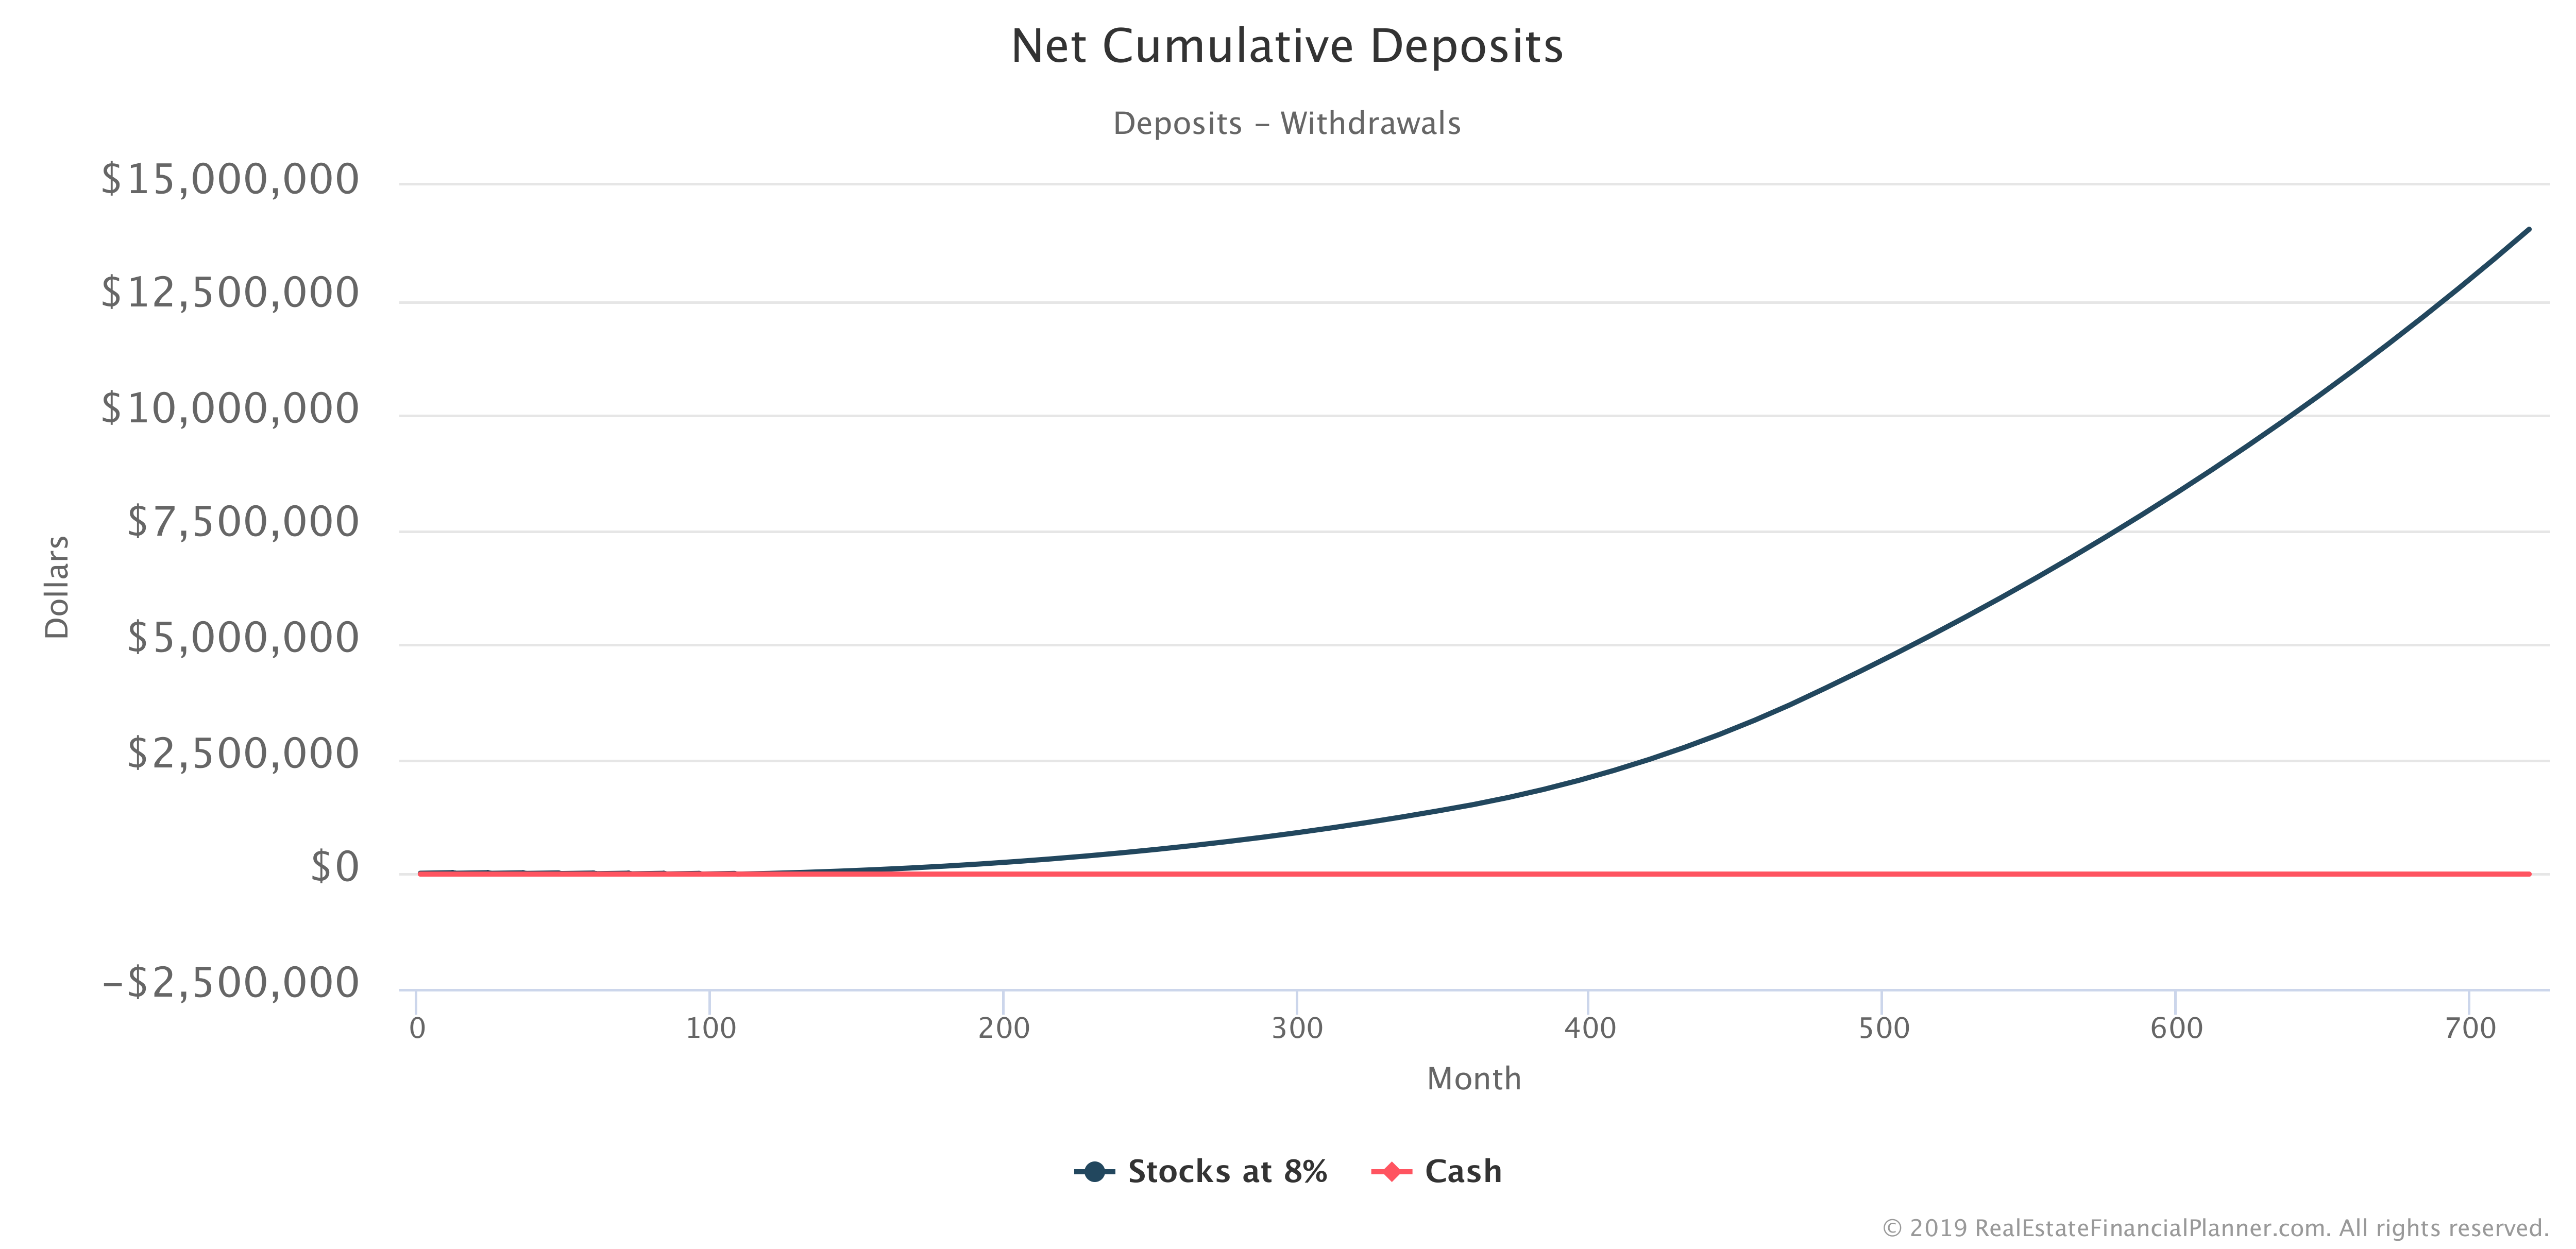 Net Cumulative Deposits